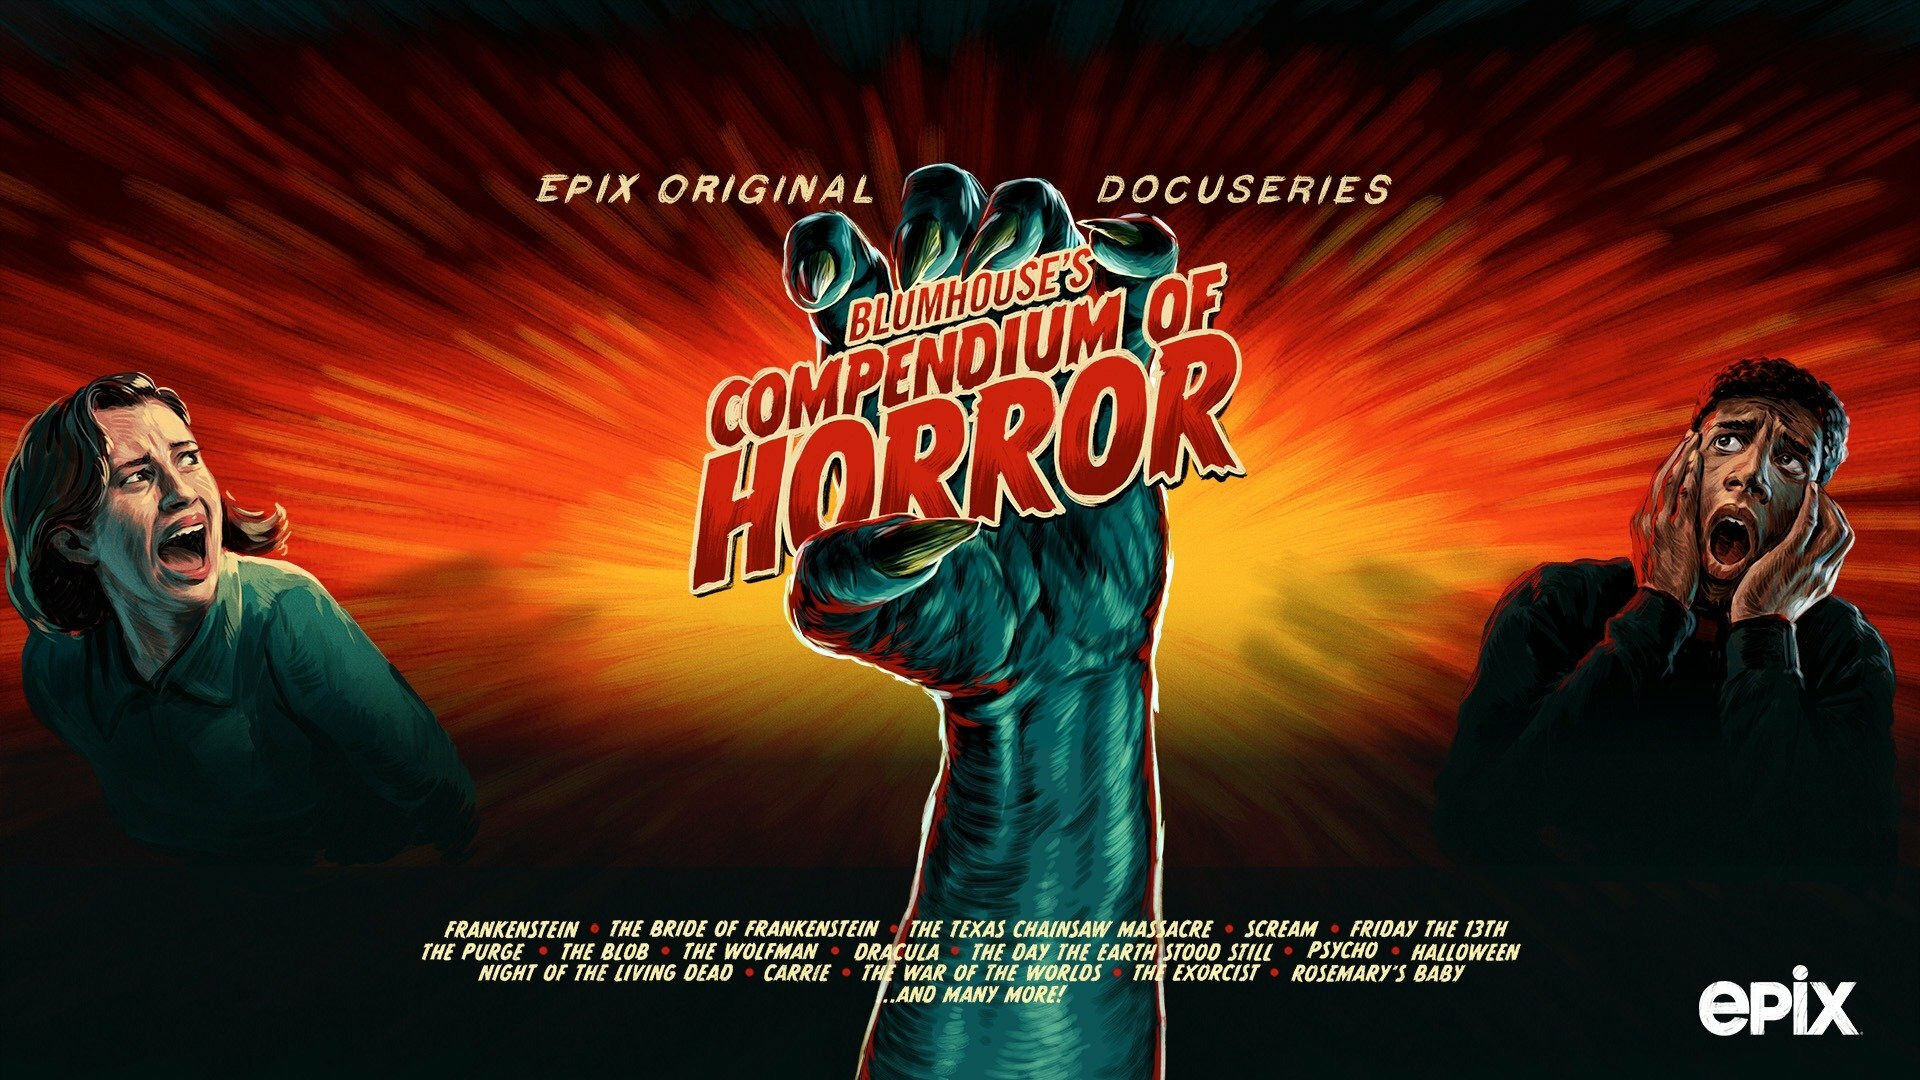 Show Blumhouse's Compendium of Horror